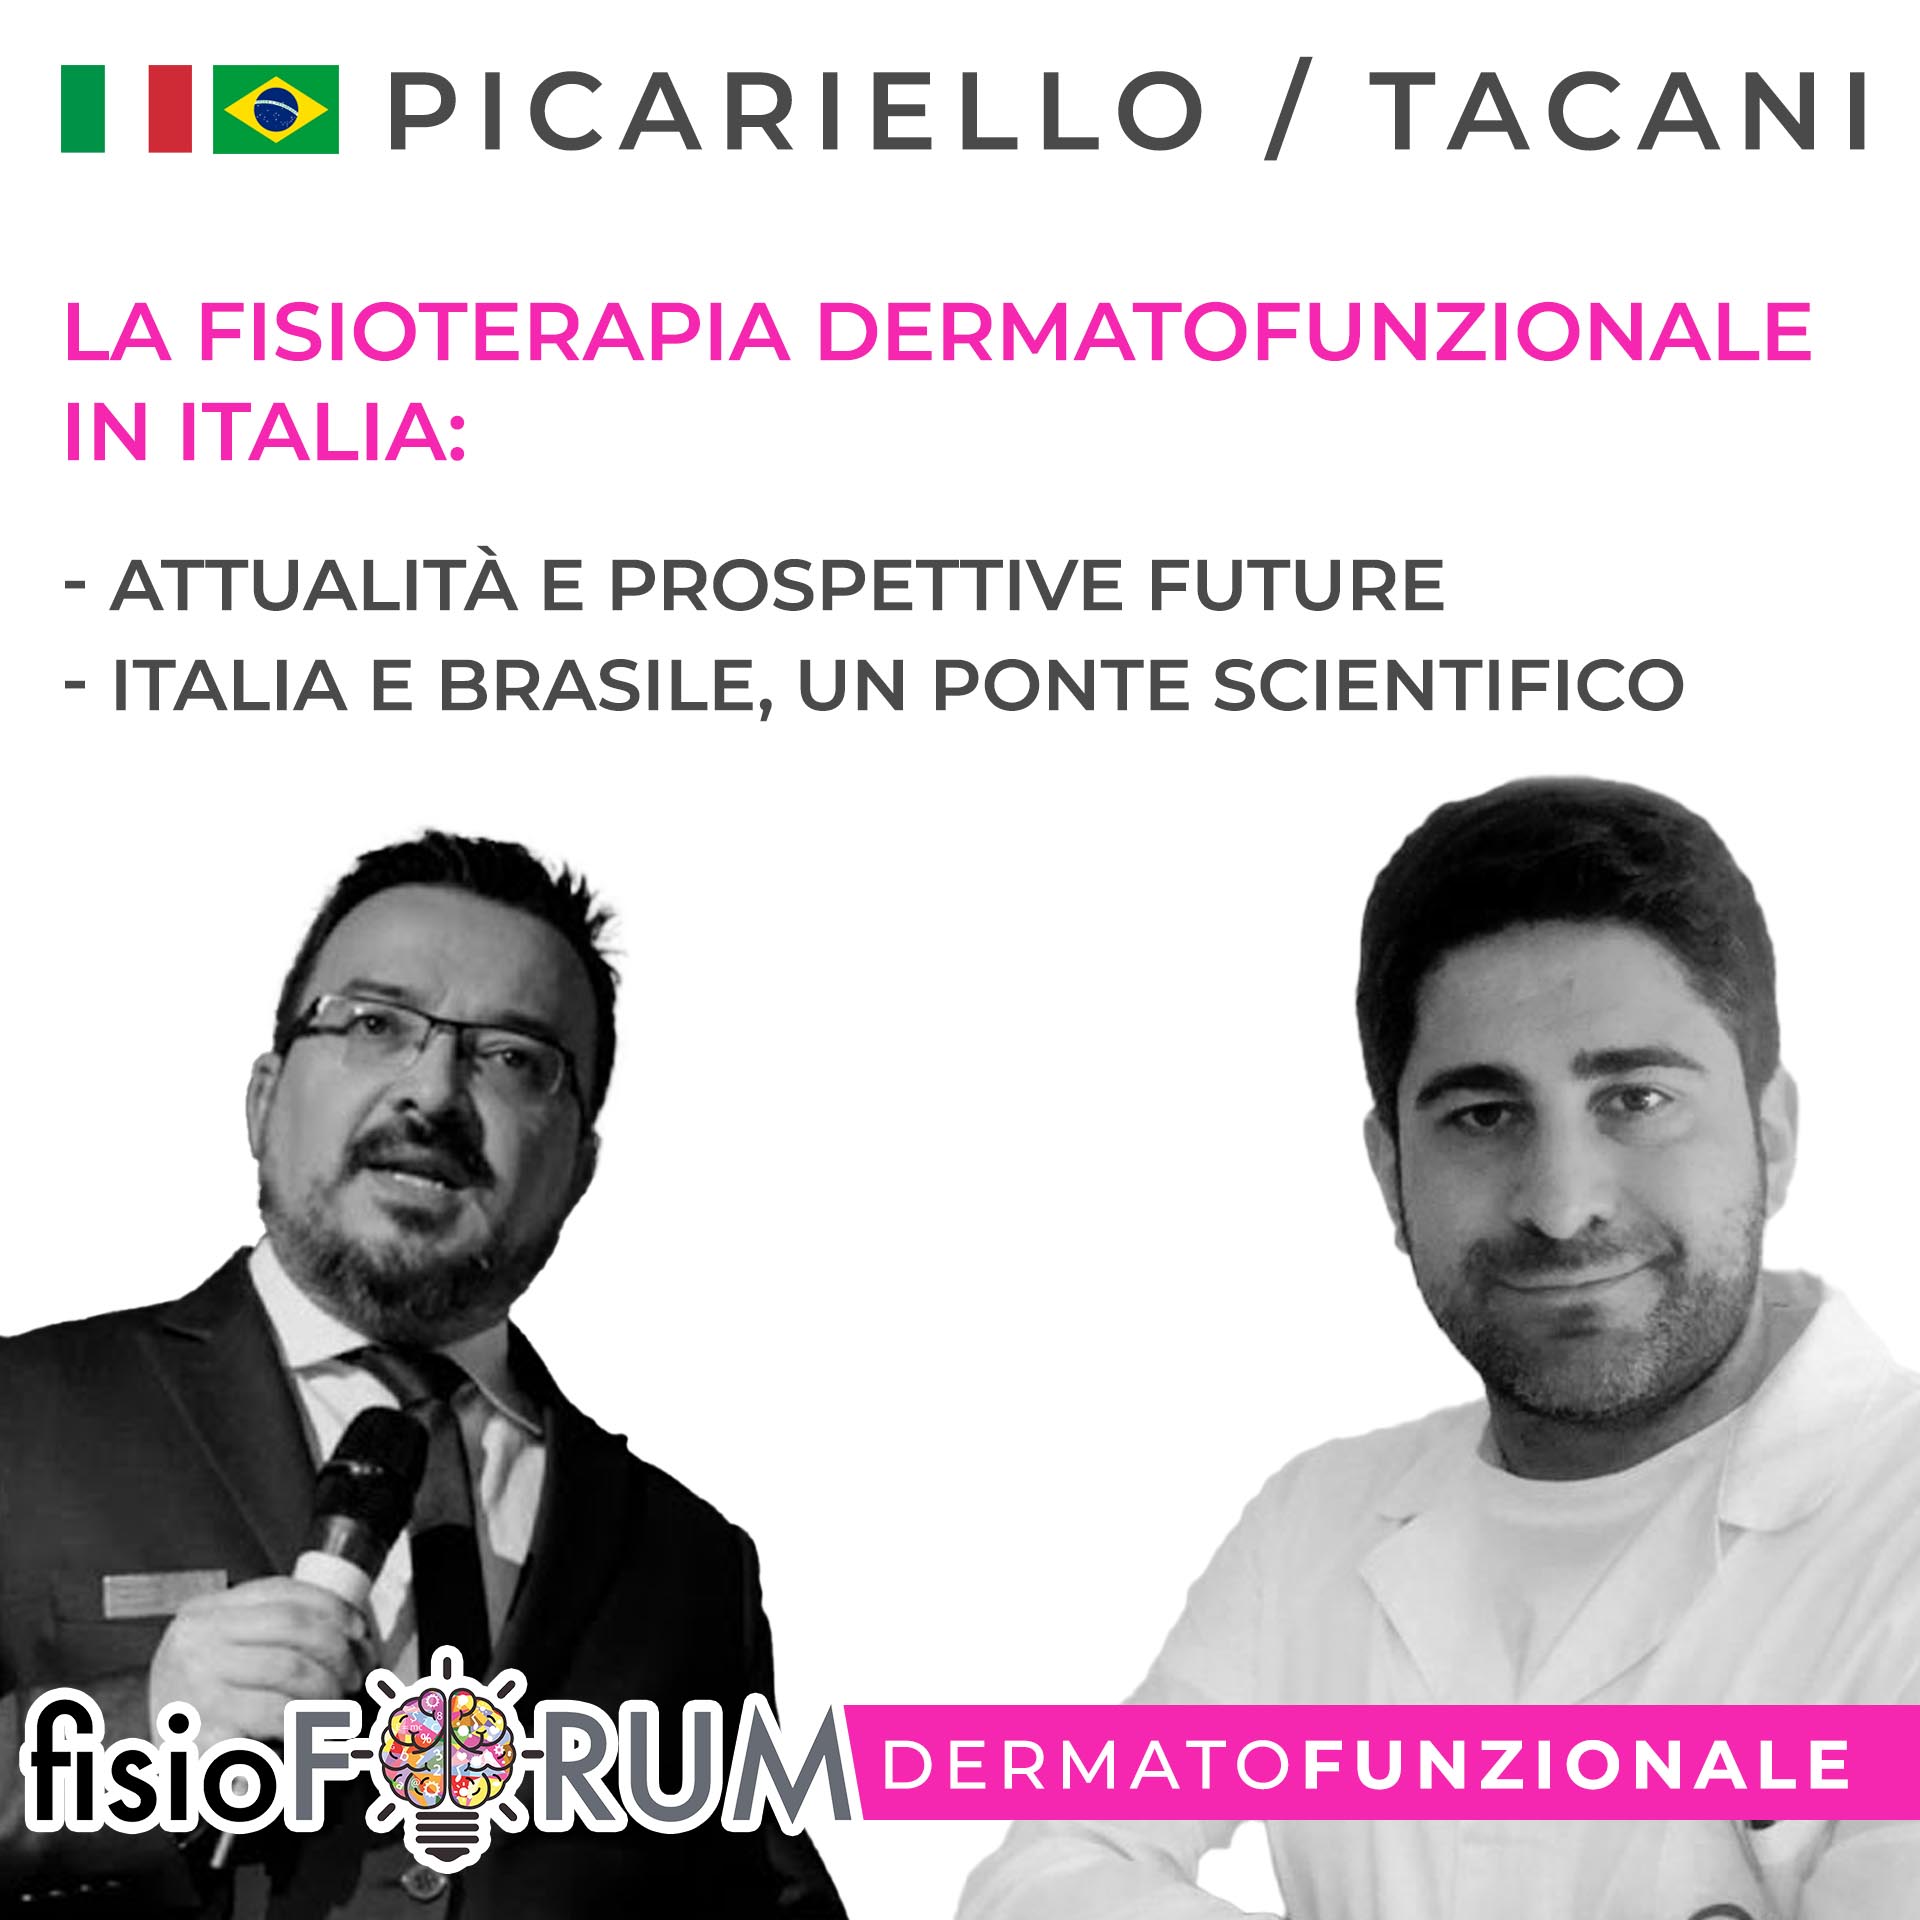 Picariello-Tacani